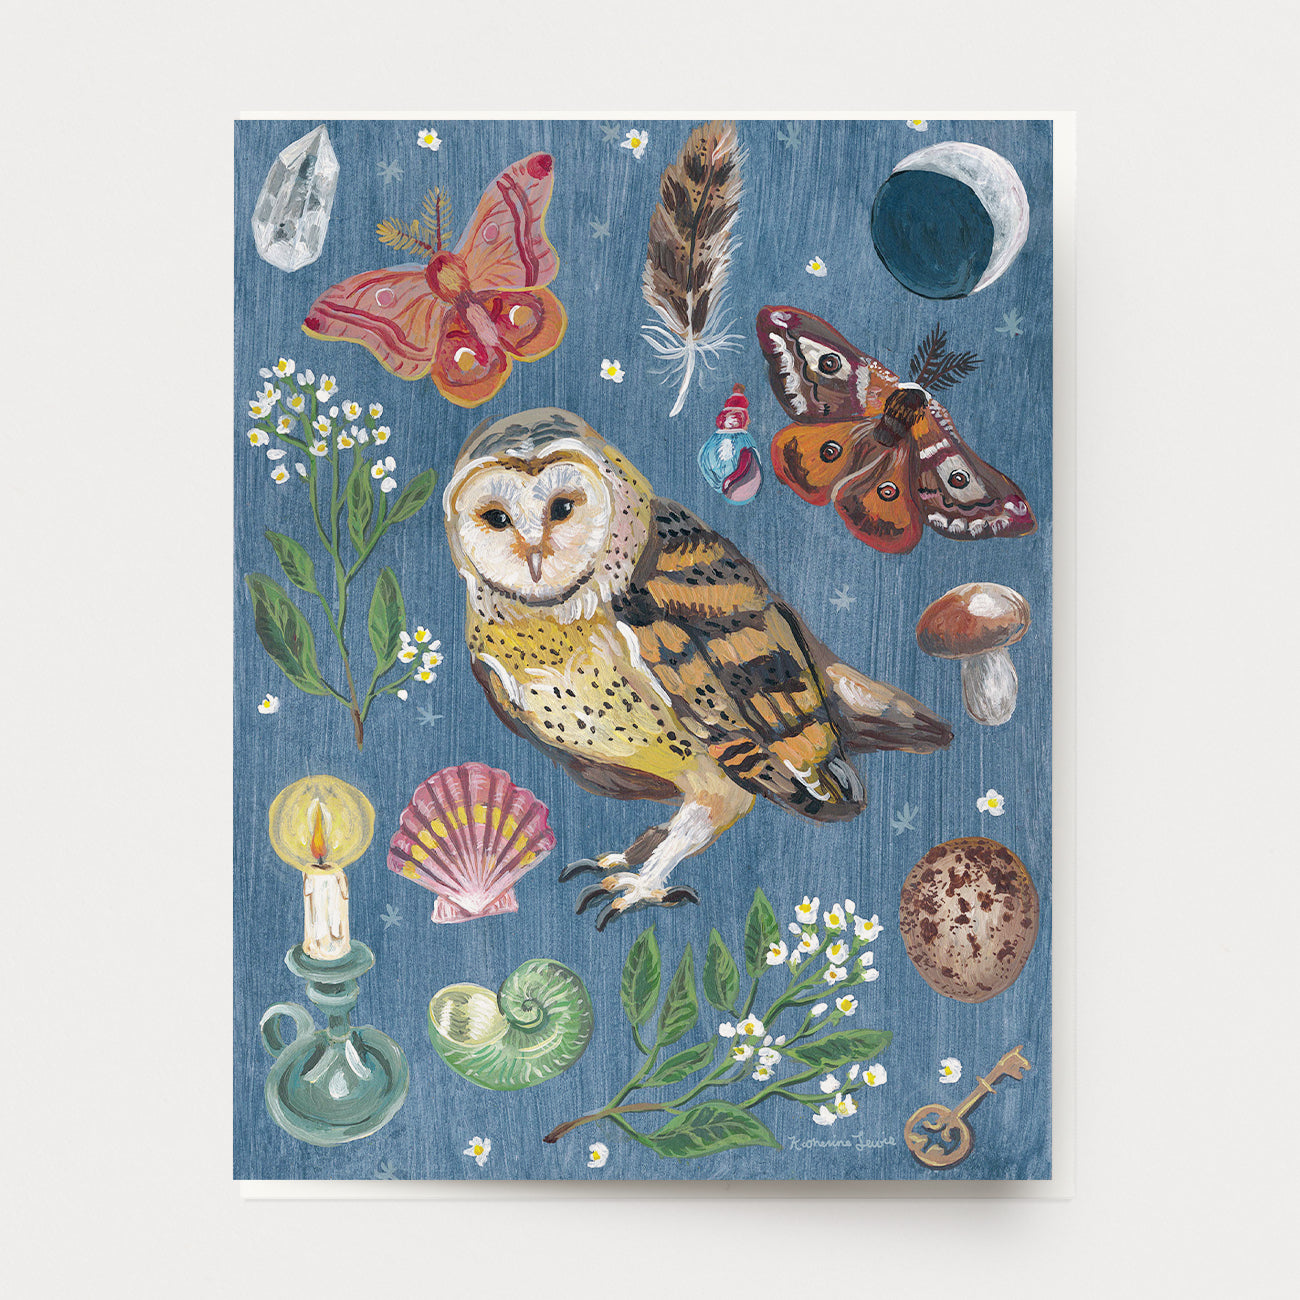 Owl Night Card